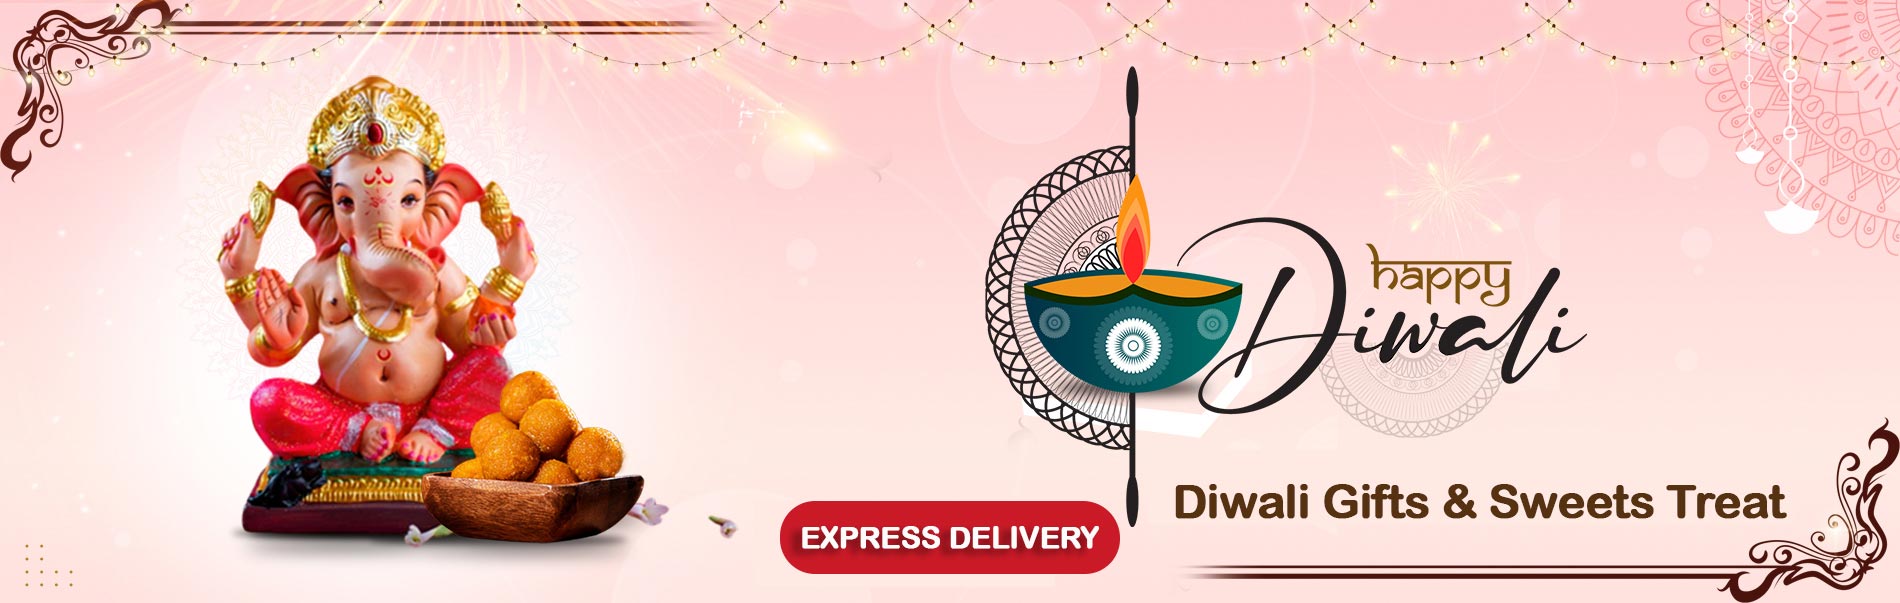 Diwali Express Gifts